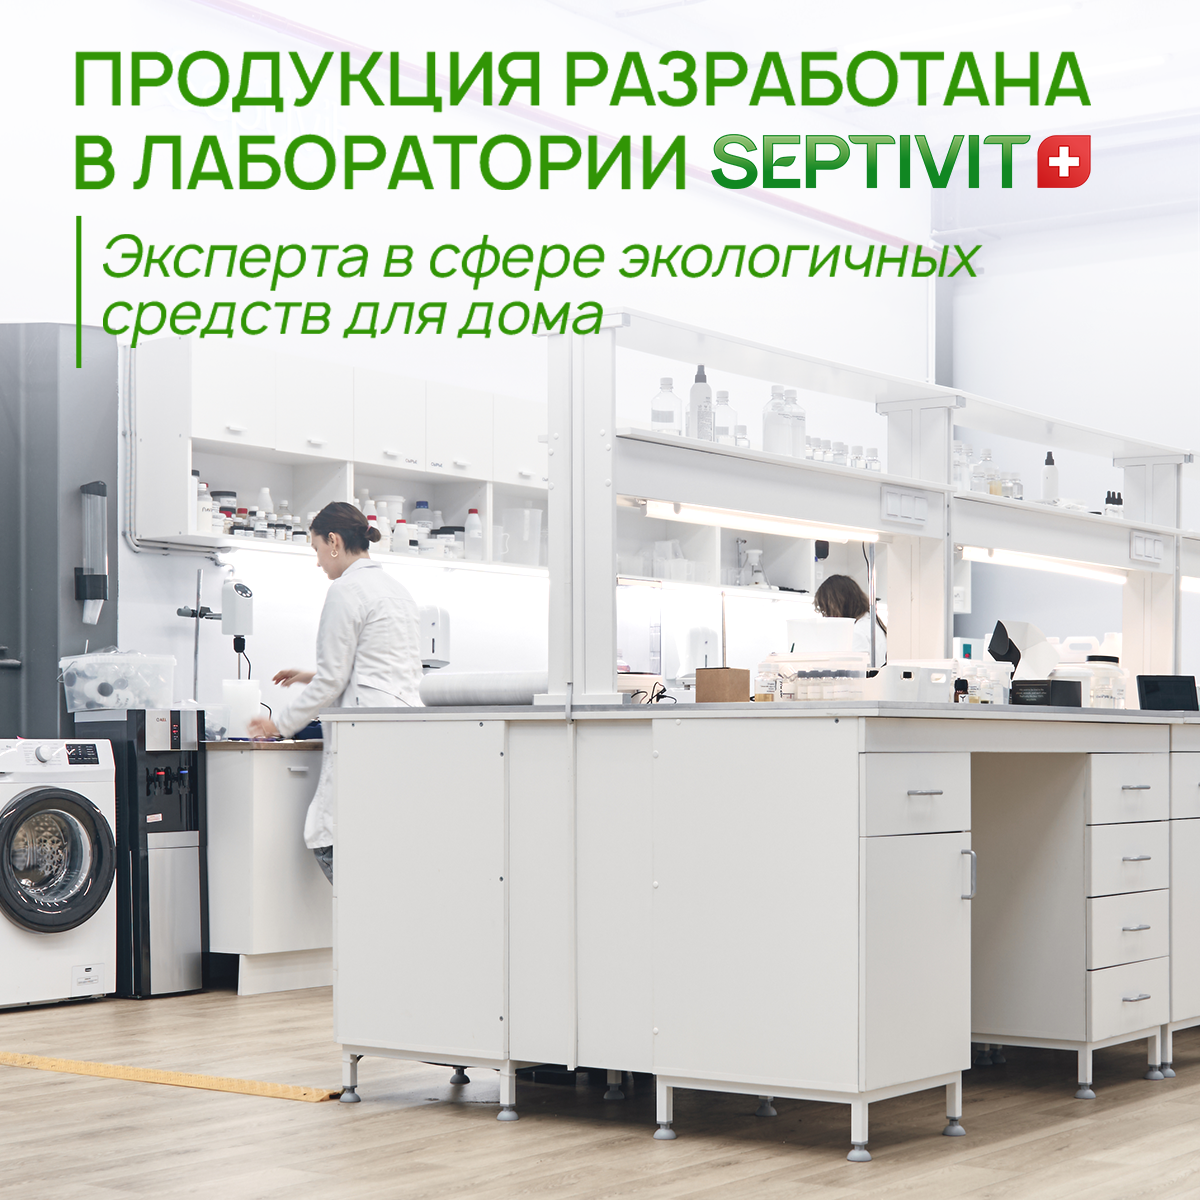 Средство для мытья посуды SEPTIVIT Premium Ледяной лайм 5 л - фото 8